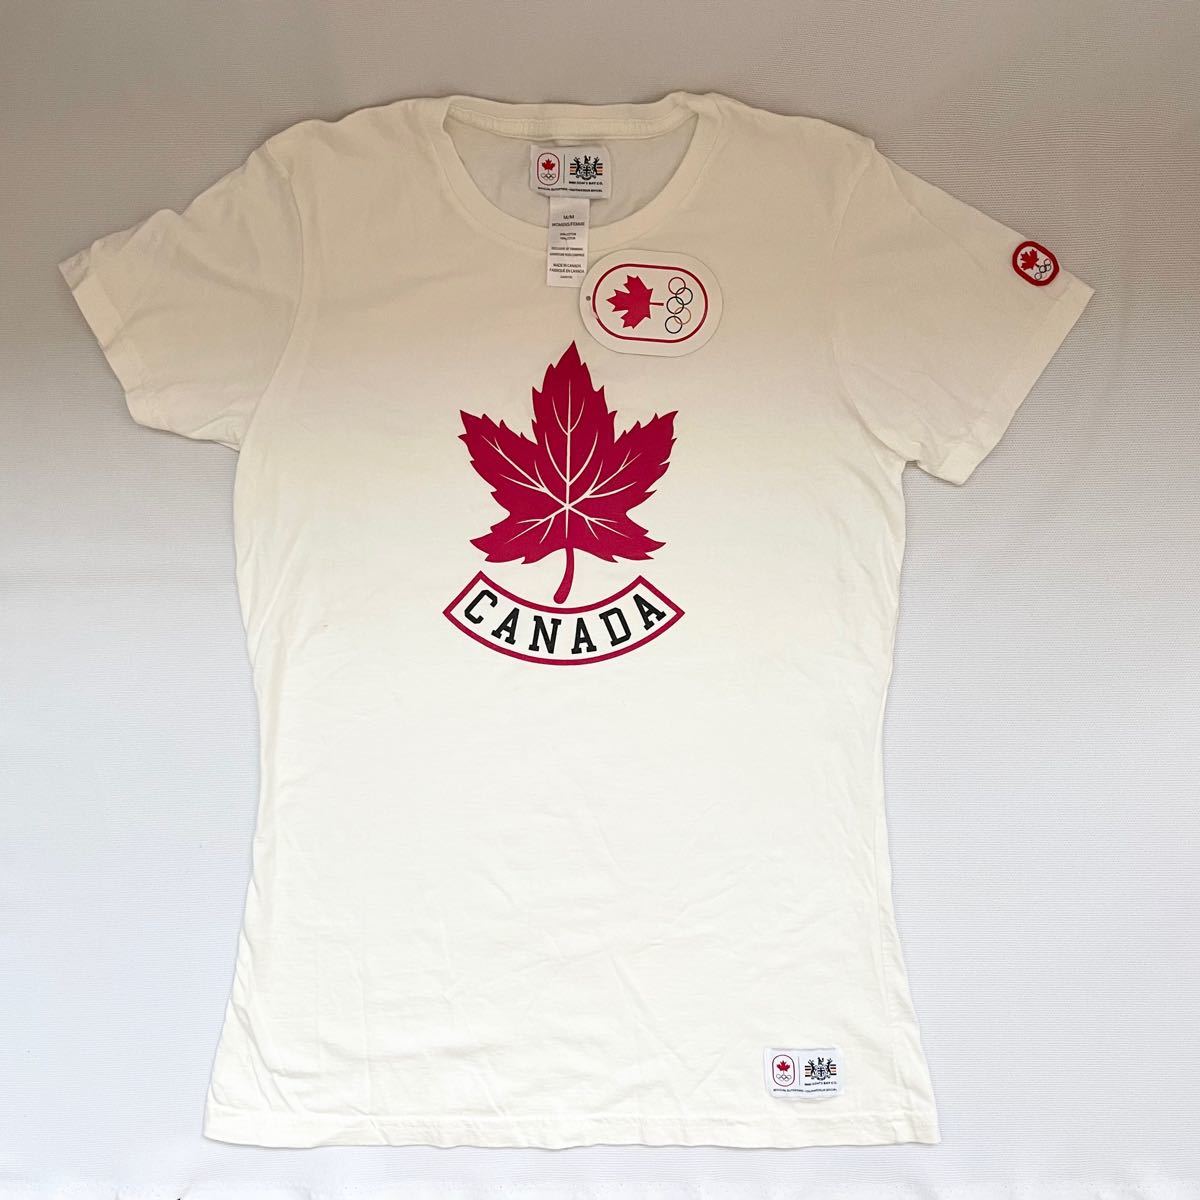 [新品未使用]HUDSON'S BAY ハドソンズベイカナダオリンピックTシャツ